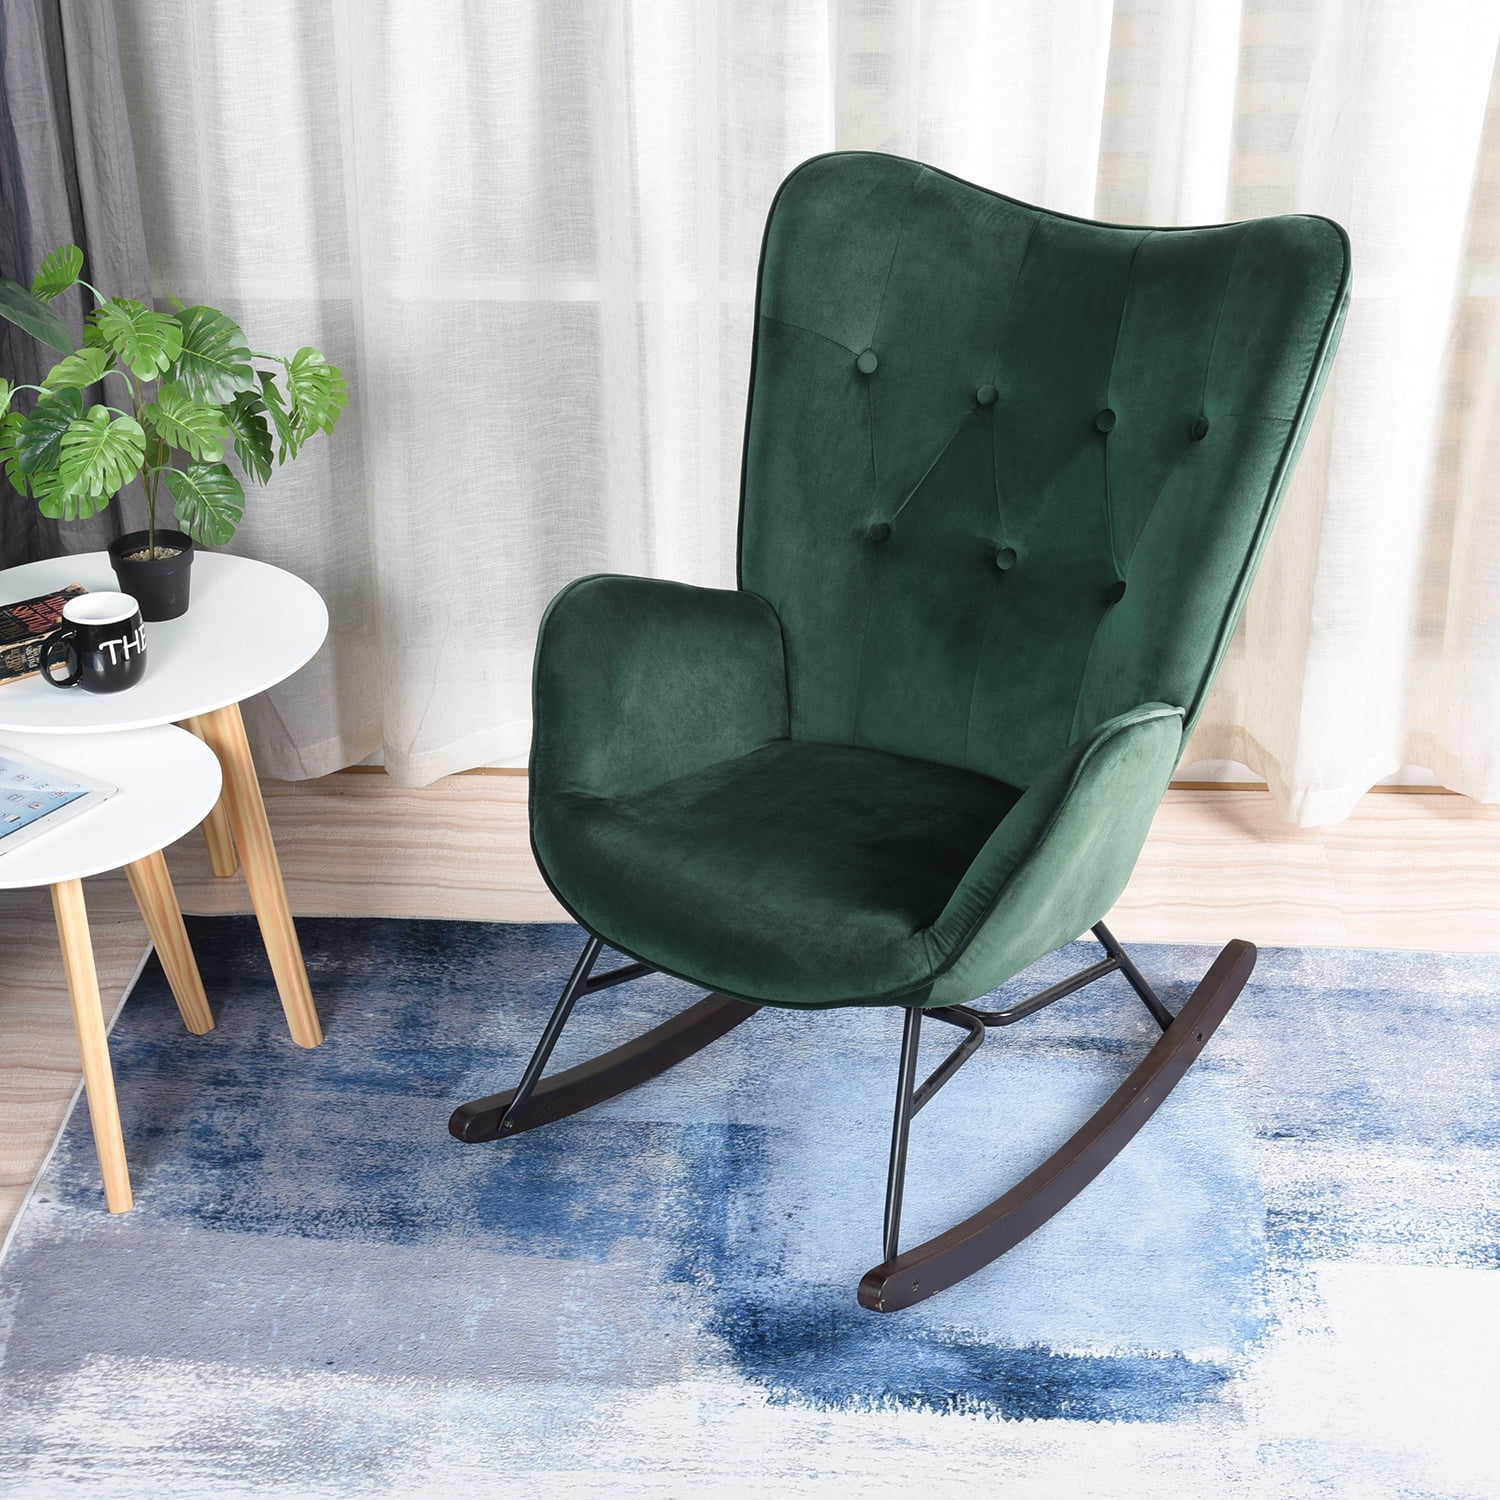 Chair, Leasuires chair Velvet Green Rocking chair, Modern